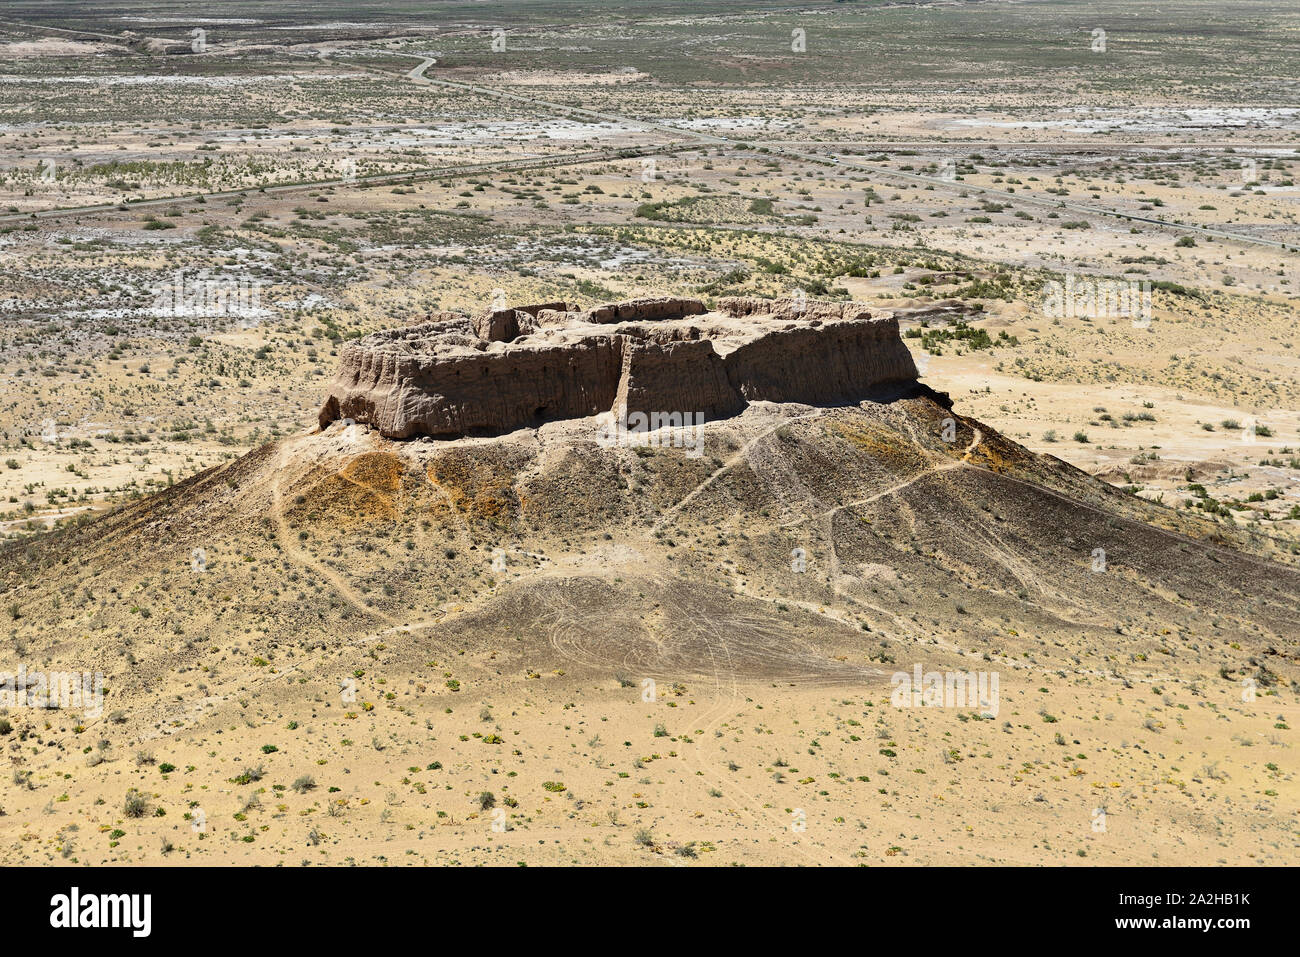 Die größten Ruinen Schlösser alte Choresm - Ayaz - Kala, II Jahrhundert N.CHR. - eine Blütezeit der Kushan Empire, Usbekistan. Stockfoto